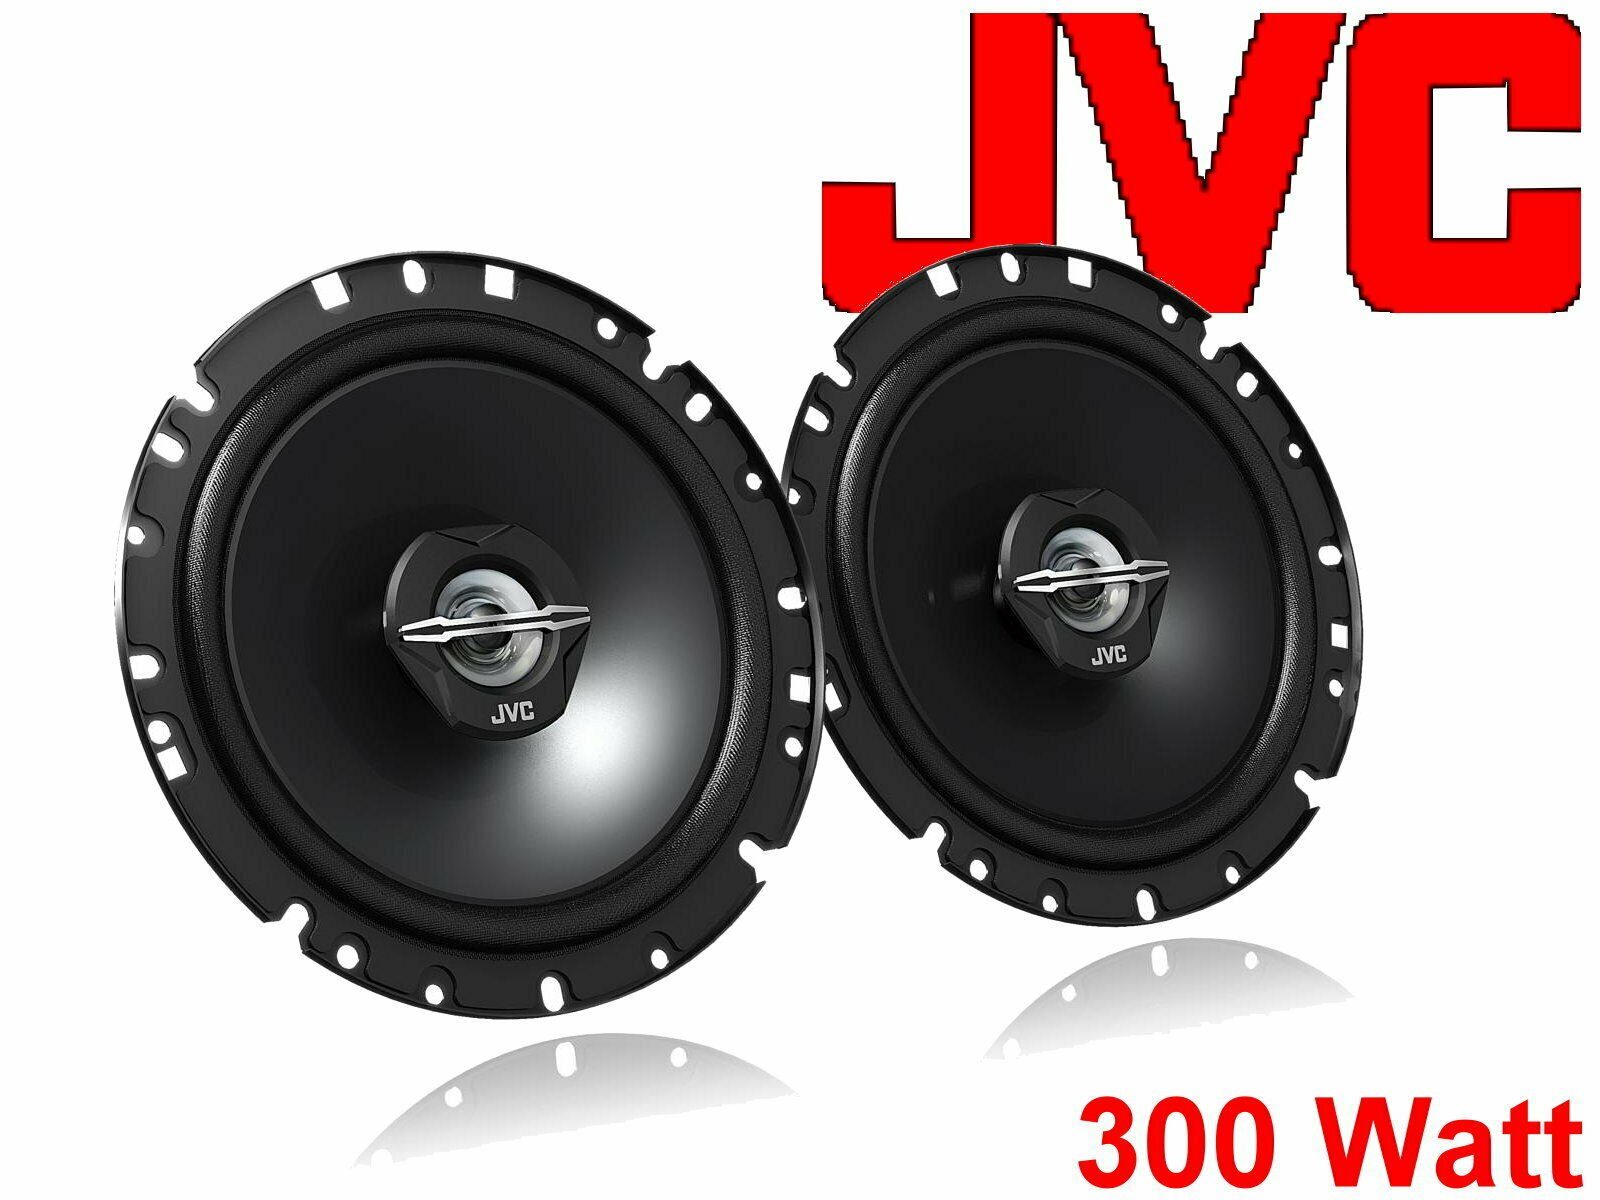 DSX JVC passend für Ford (30 Bj - W) Lautspr 2021 05/06 S-Max Auto-Lautsprecher